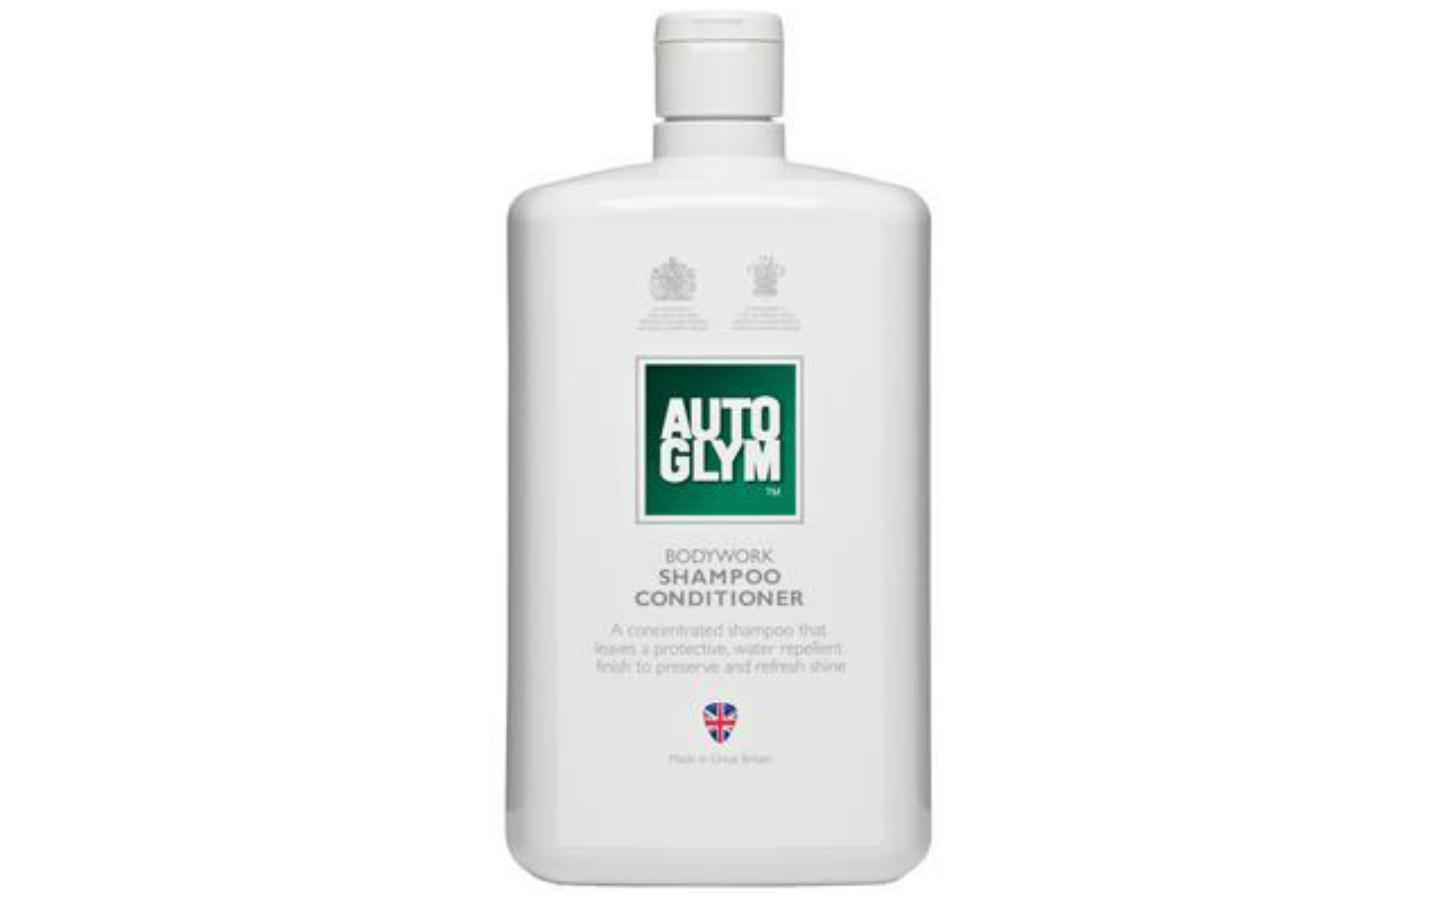 Auto Glym Bodywork Shampoo Conditioner review